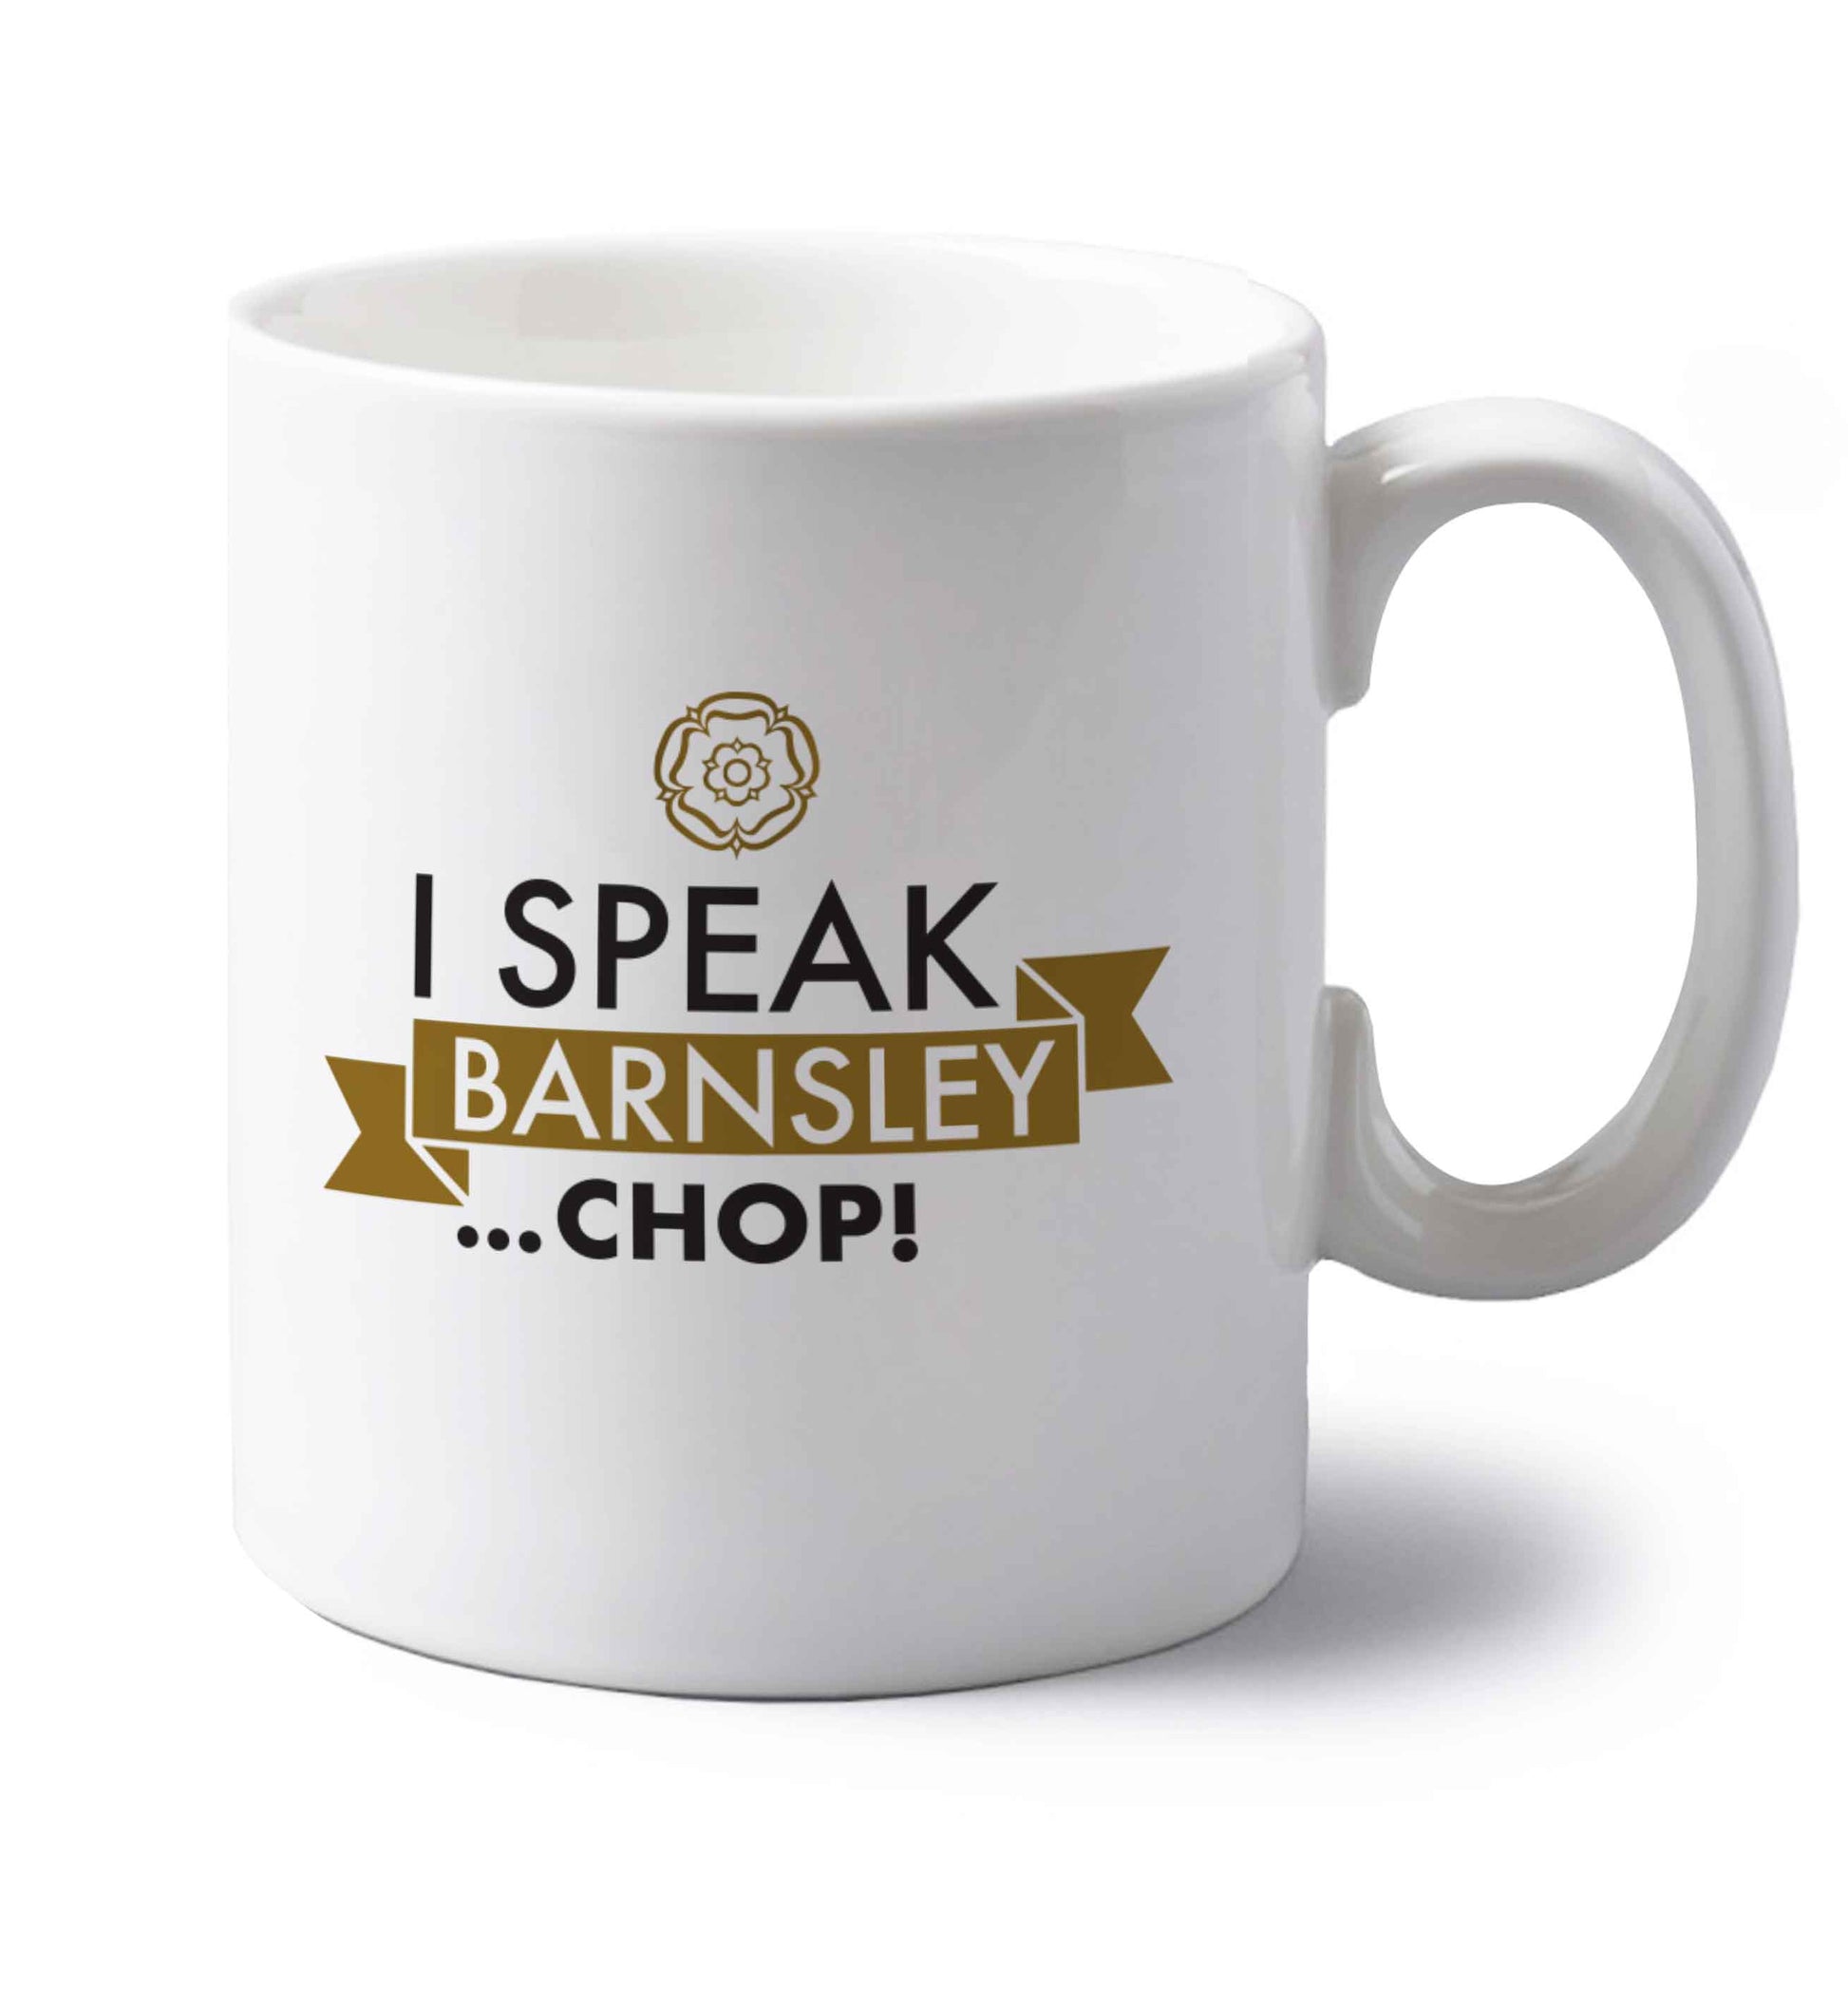 I speak Barnsley...chop! left handed white ceramic mug 